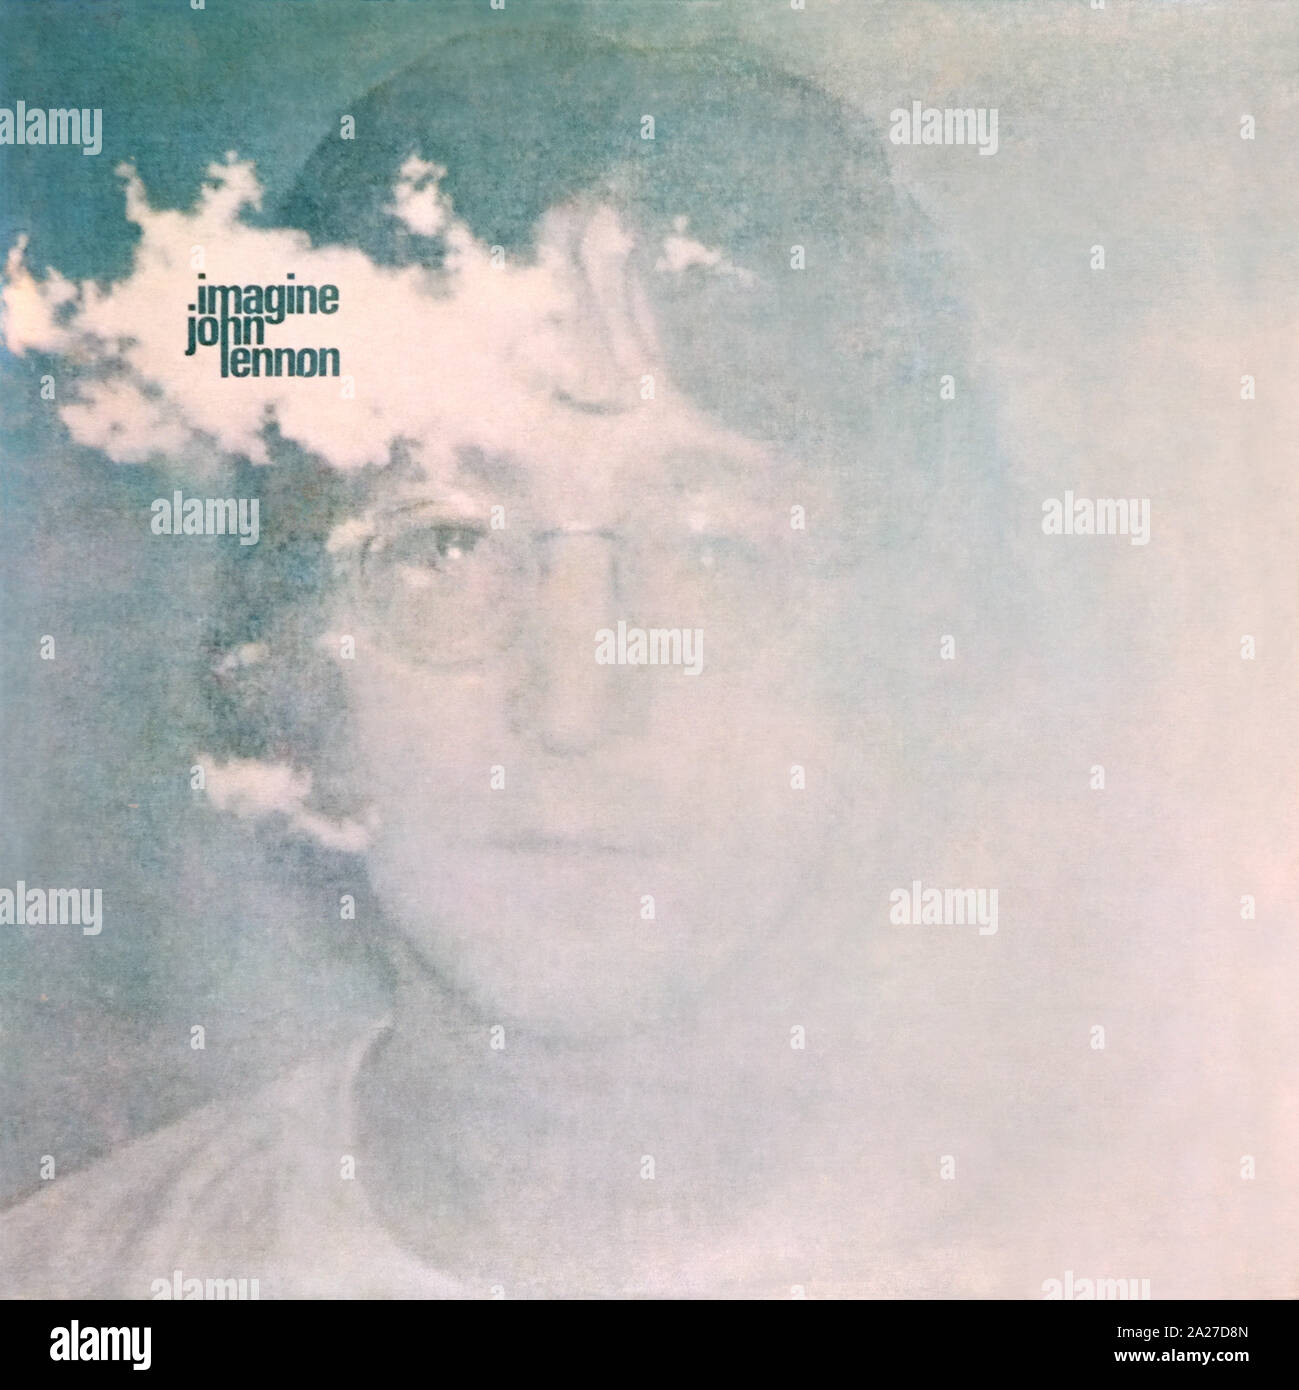 John Lennon - copertina originale in vinile - Imagine - 1971 Foto Stock